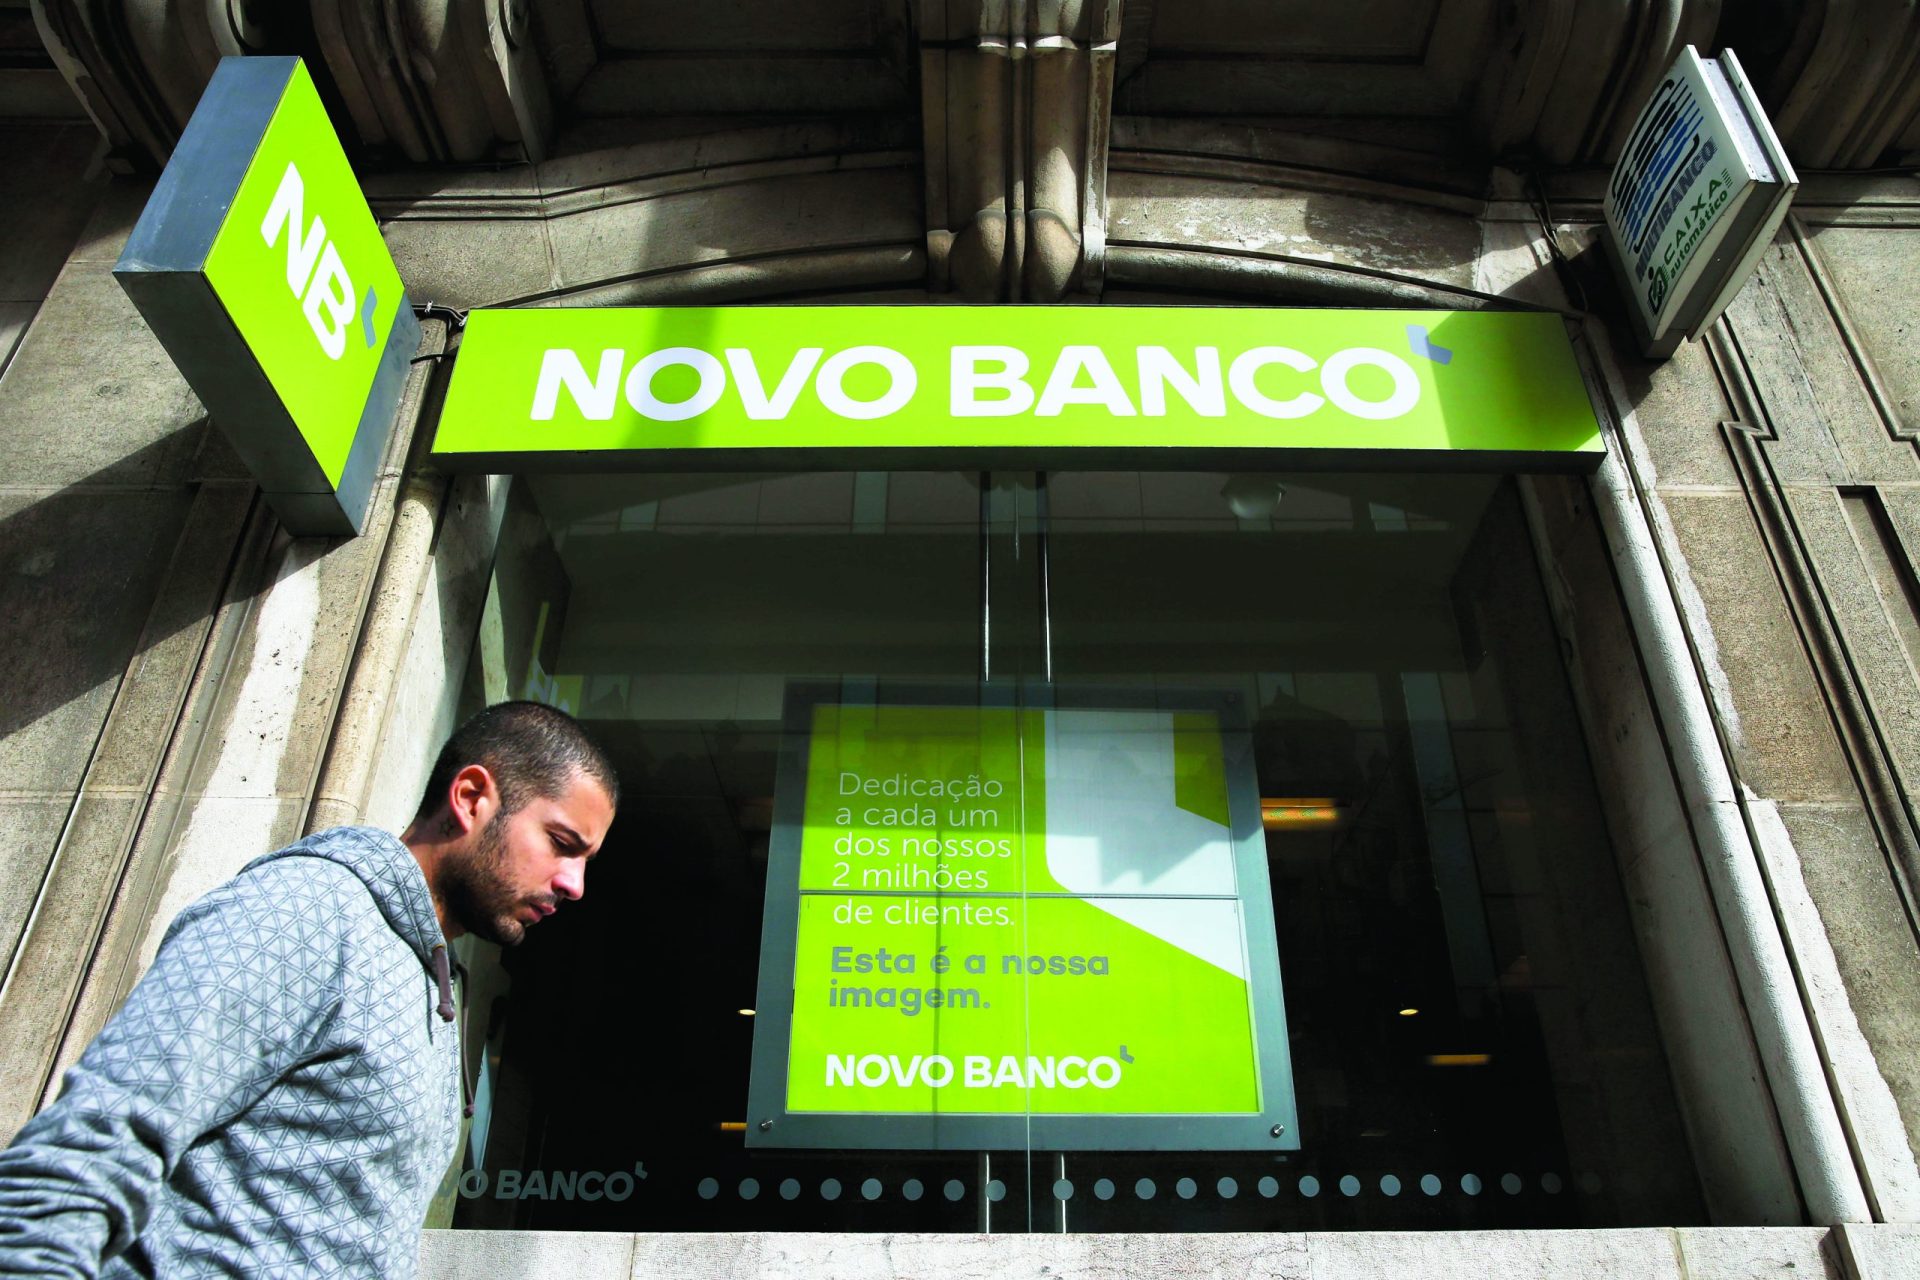 Venda do Novo Banco cancelada